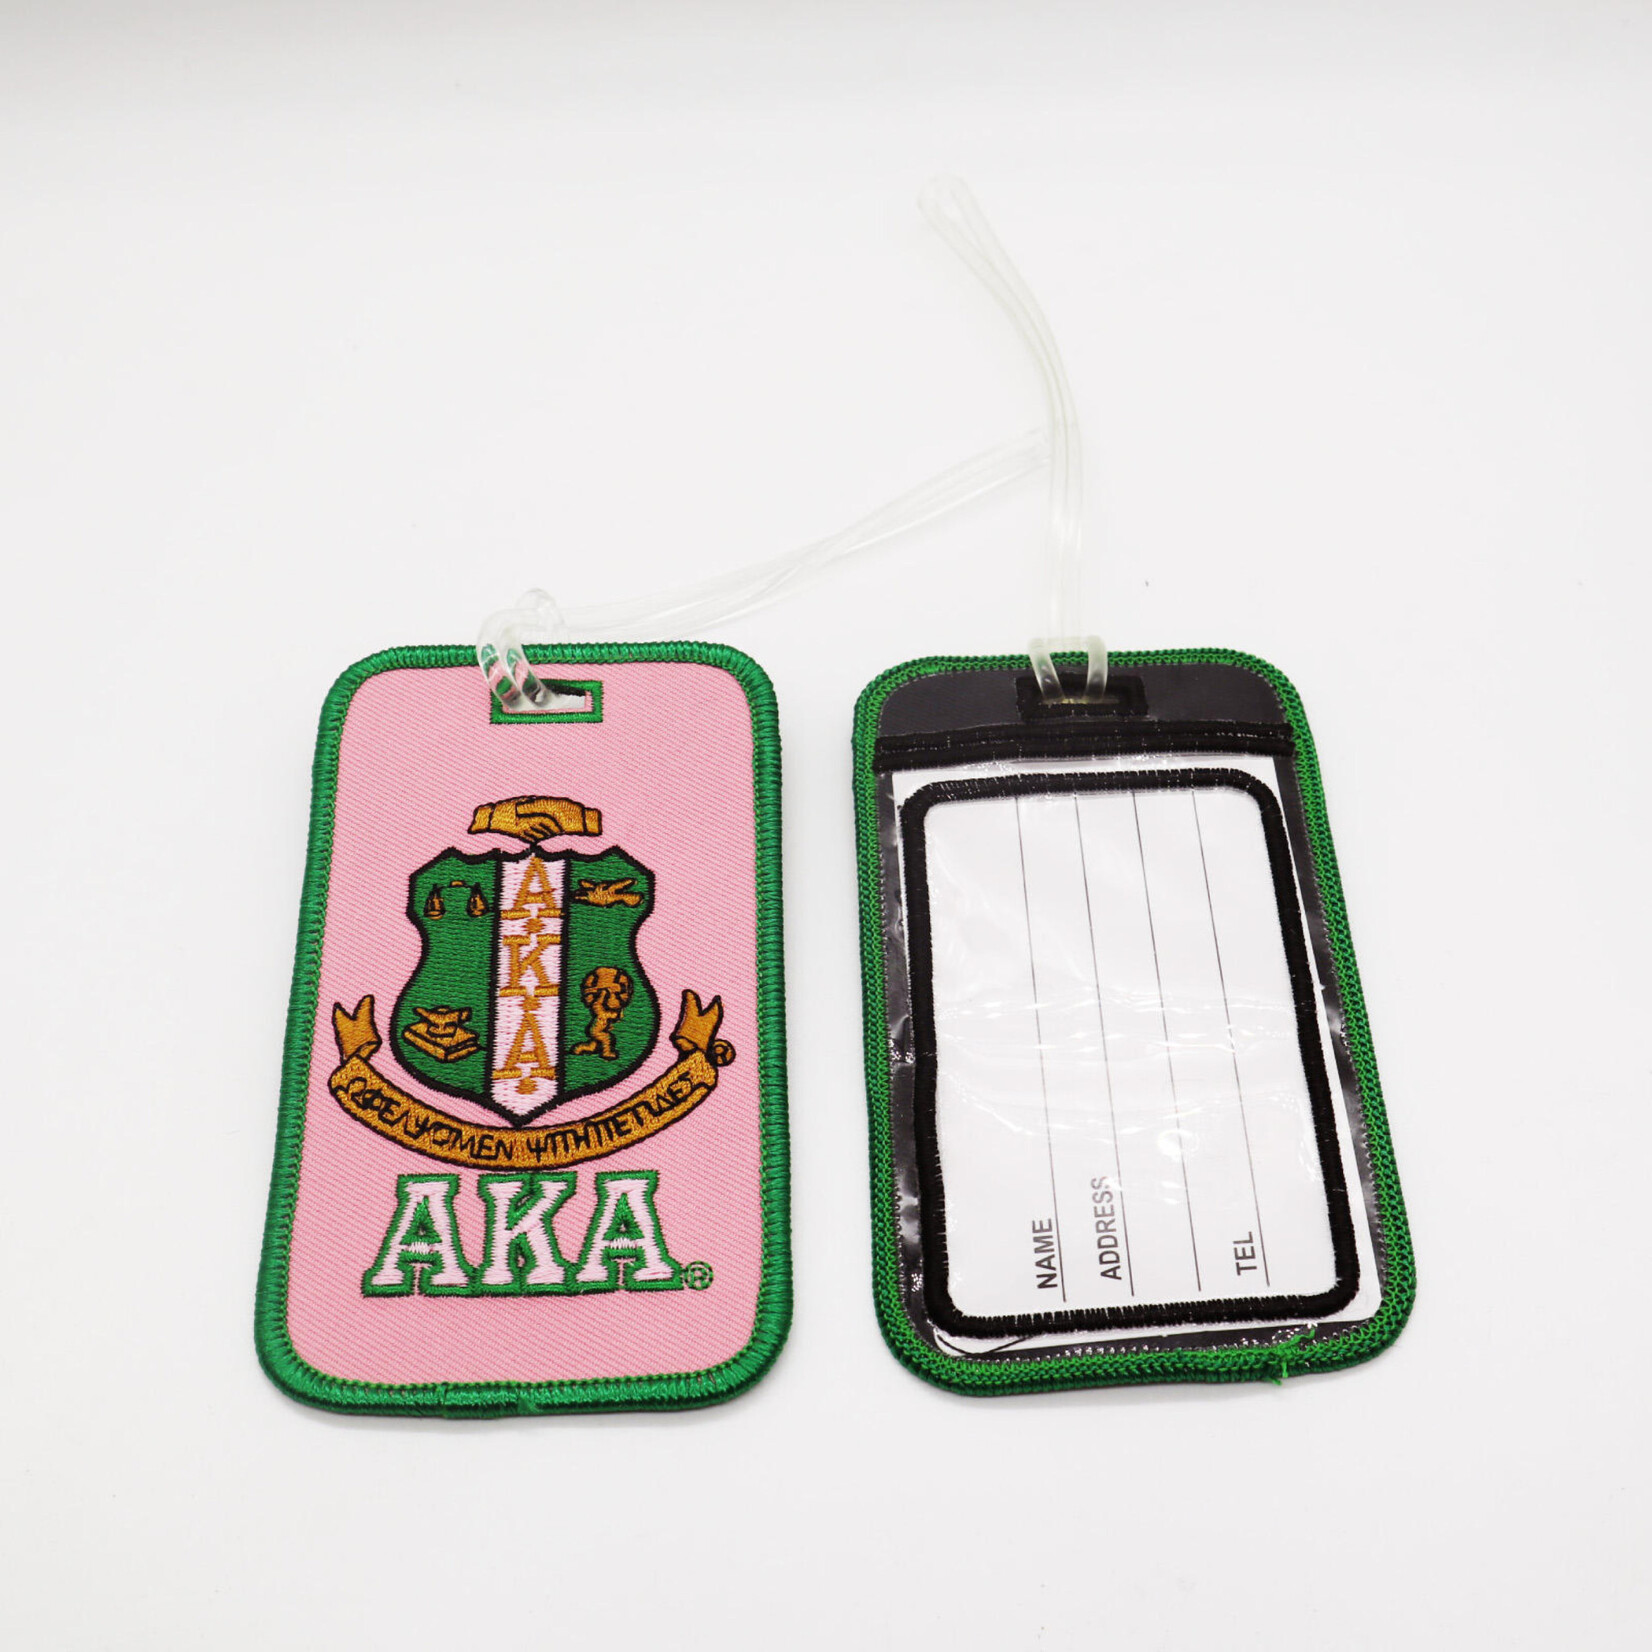 ΑΚΑ AKA Shield Embroidered Luggage Tag